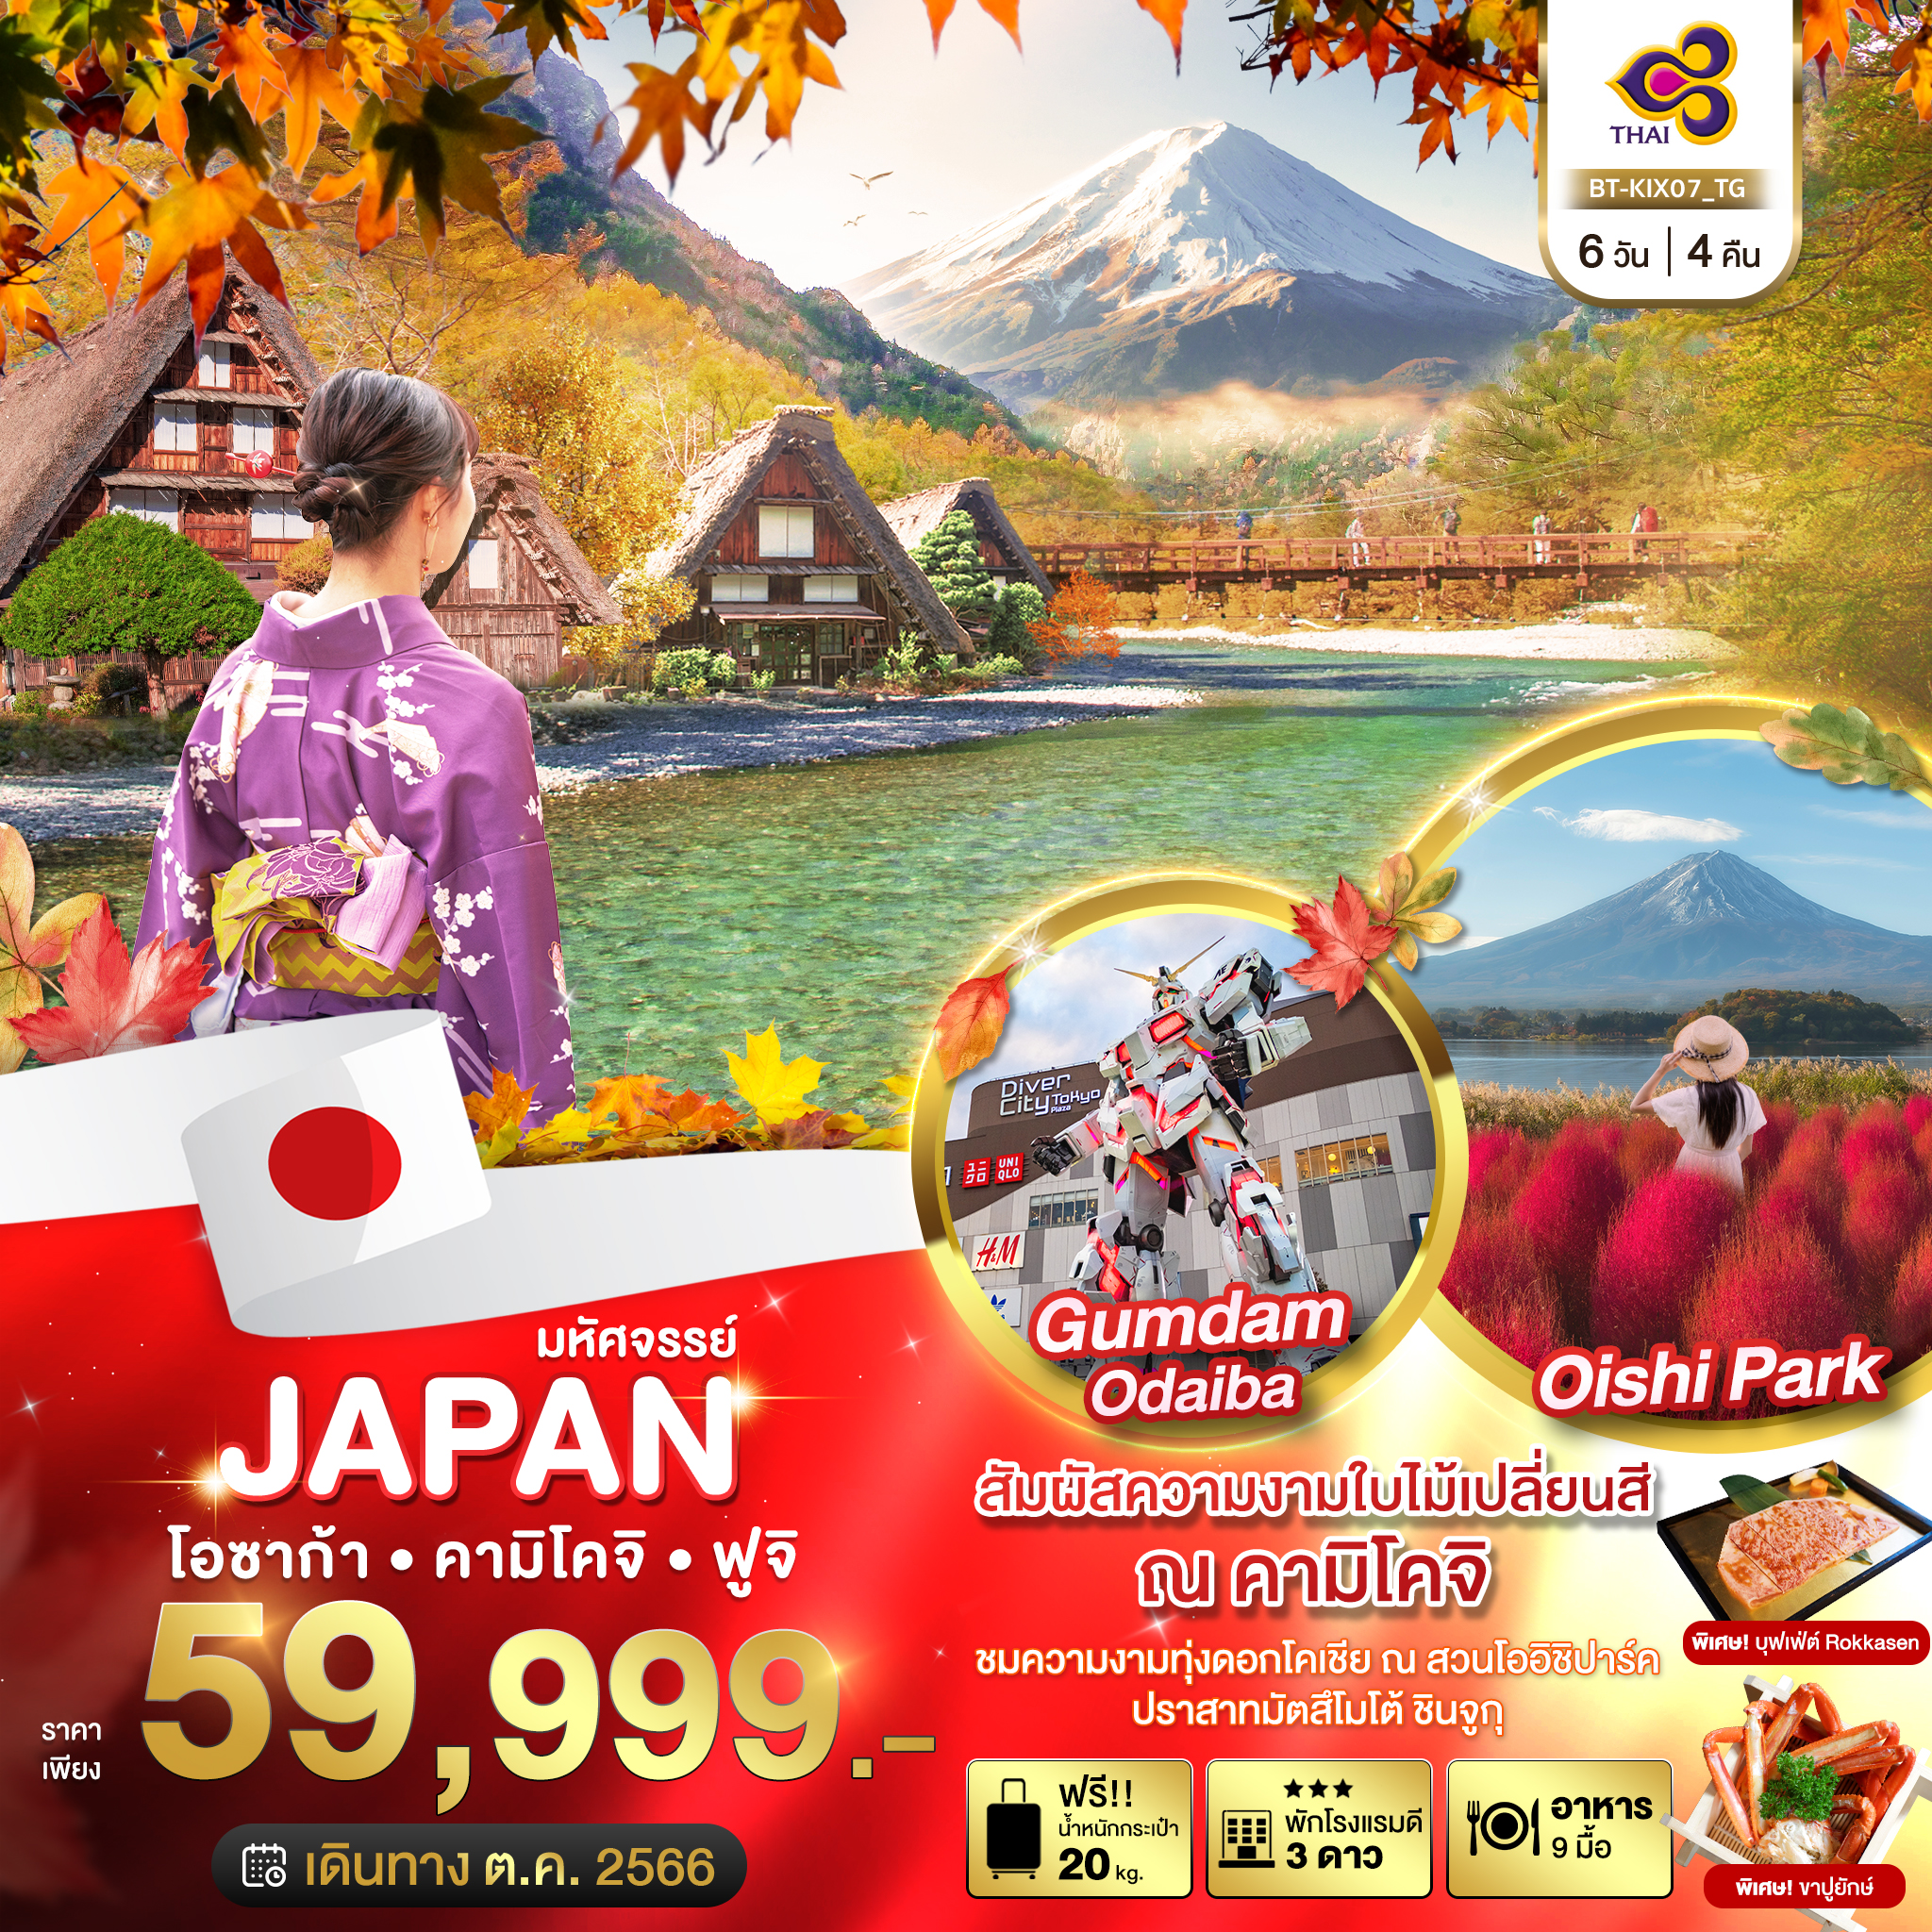 JAPAN โอซาก้า คามิโคจิ ฟูจิ 6 วัน 4 คืน เดินทาง ต.ค.66 ราคา 59,999.- Thai Airways (TG)